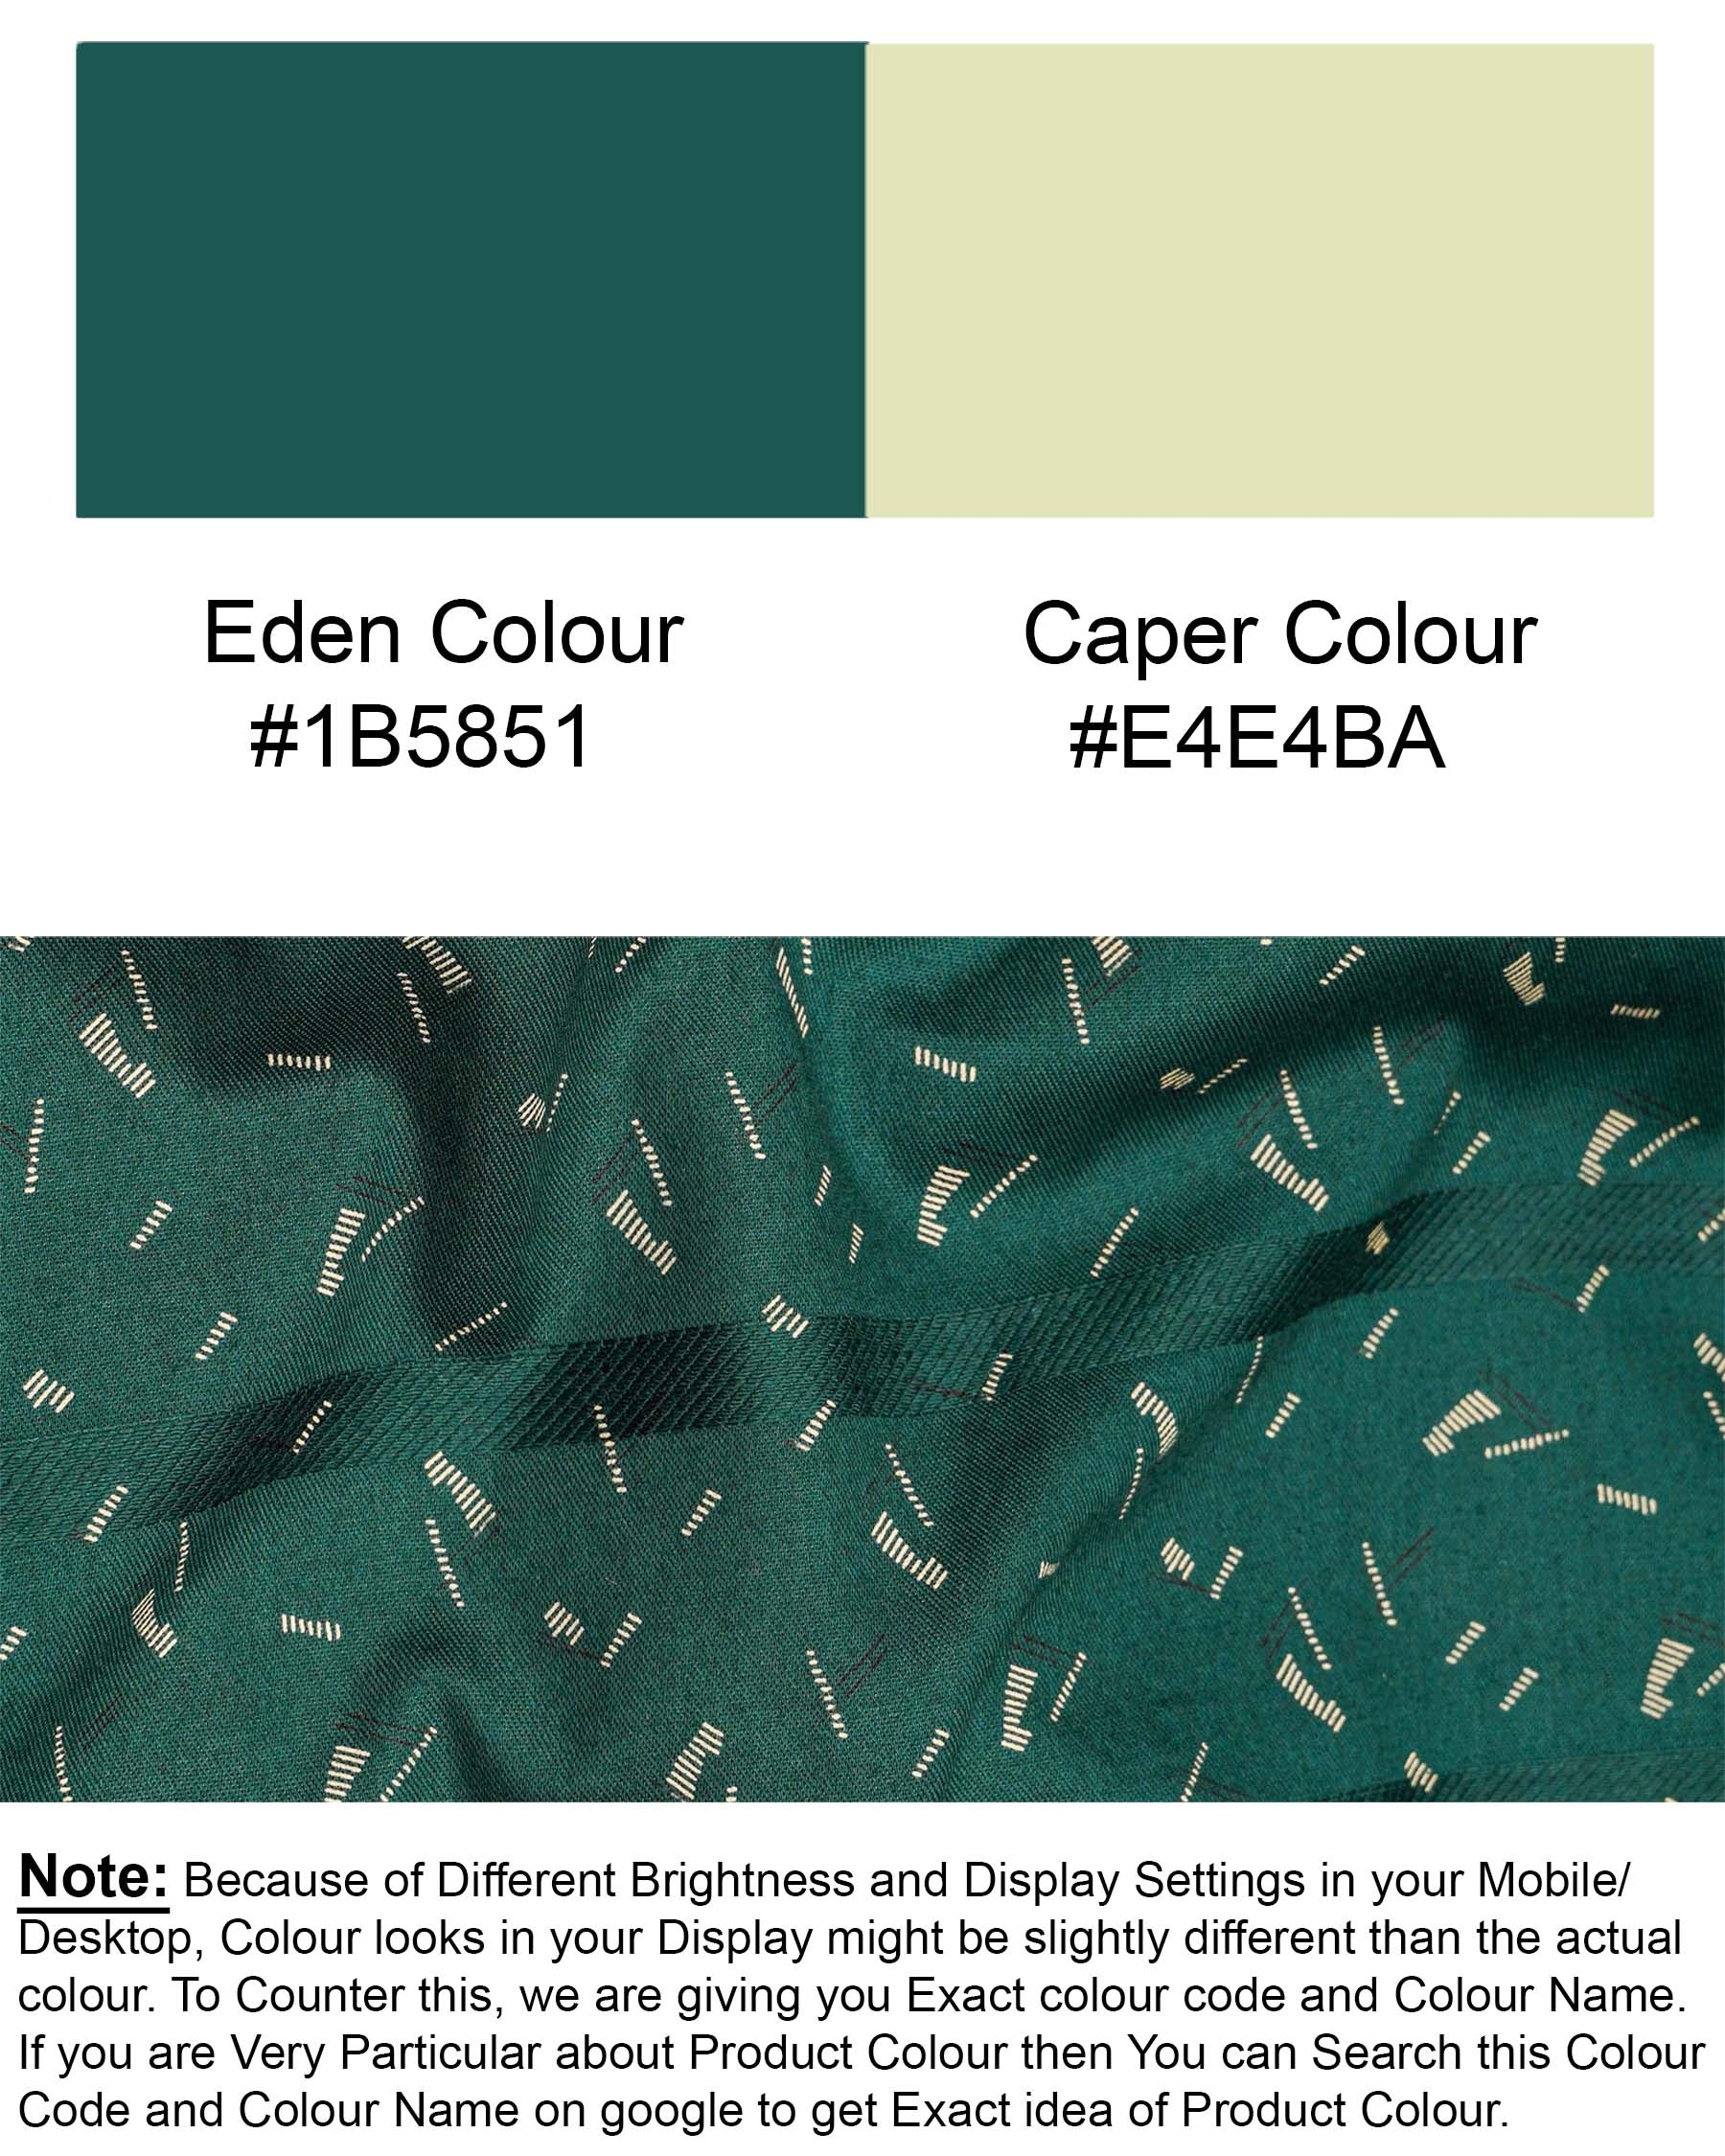 Eden Green Subtle Striped Dobby Texture Premium Giza Cotton Shirt 7249-BD-38, 7249-BD-H-38, 7249-BD-39, 7249-BD-H-39, 7249-BD-40, 7249-BD-H-40, 7249-BD-42, 7249-BD-H-42, 7249-BD-44, 7249-BD-H-44, 7249-BD-46, 7249-BD-H-46, 7249-BD-48, 7249-BD-H-48, 7249-BD-50, 7249-BD-H-50, 7249-BD-52, 7249-BD-H-52